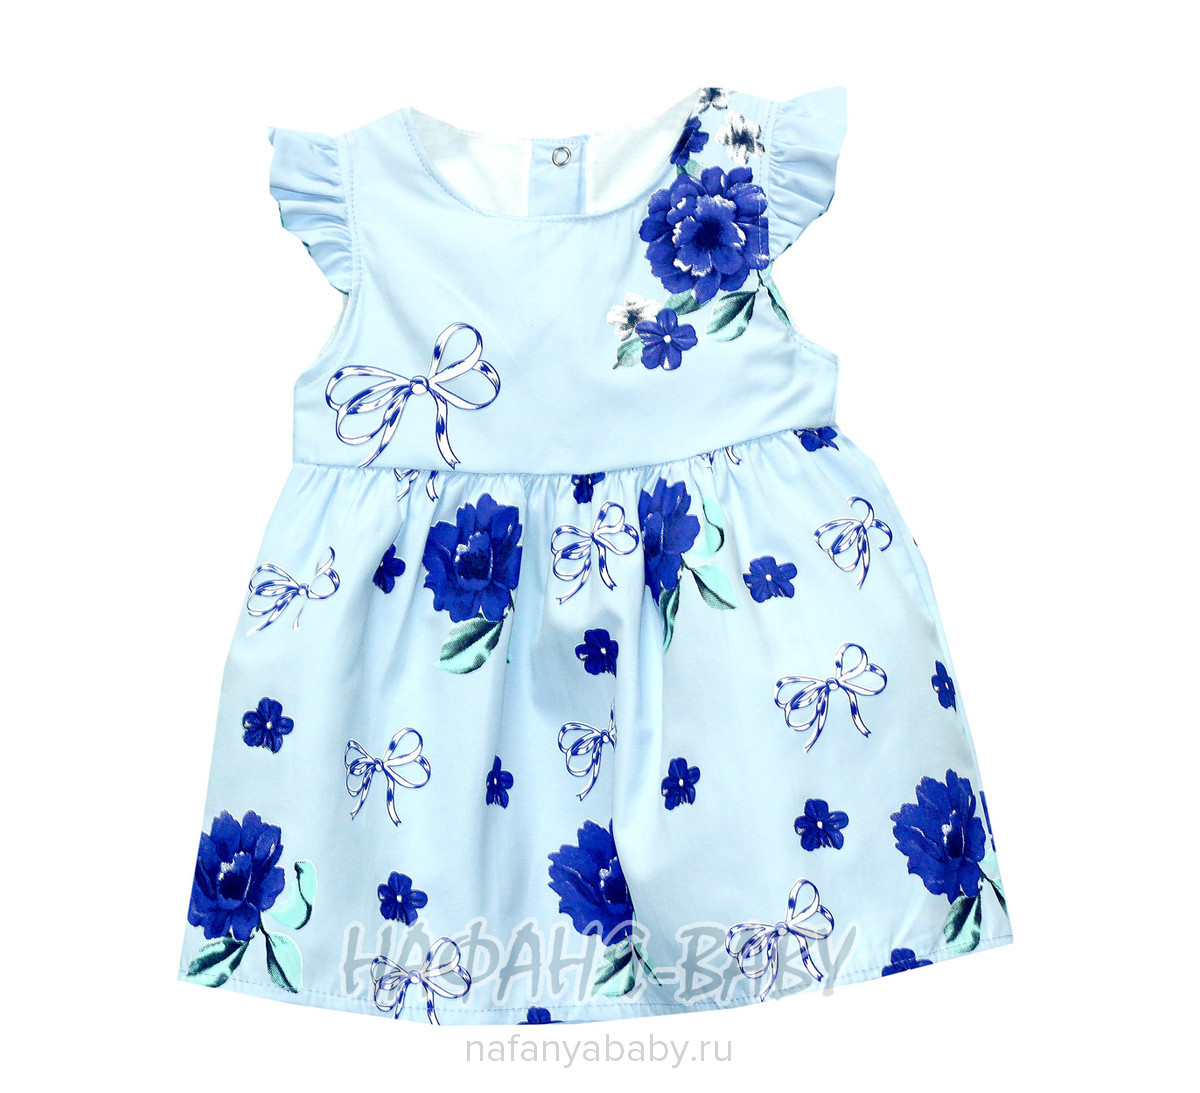 Детское платье BIDIRIK, купить в интернет магазине Нафаня. арт: 738.